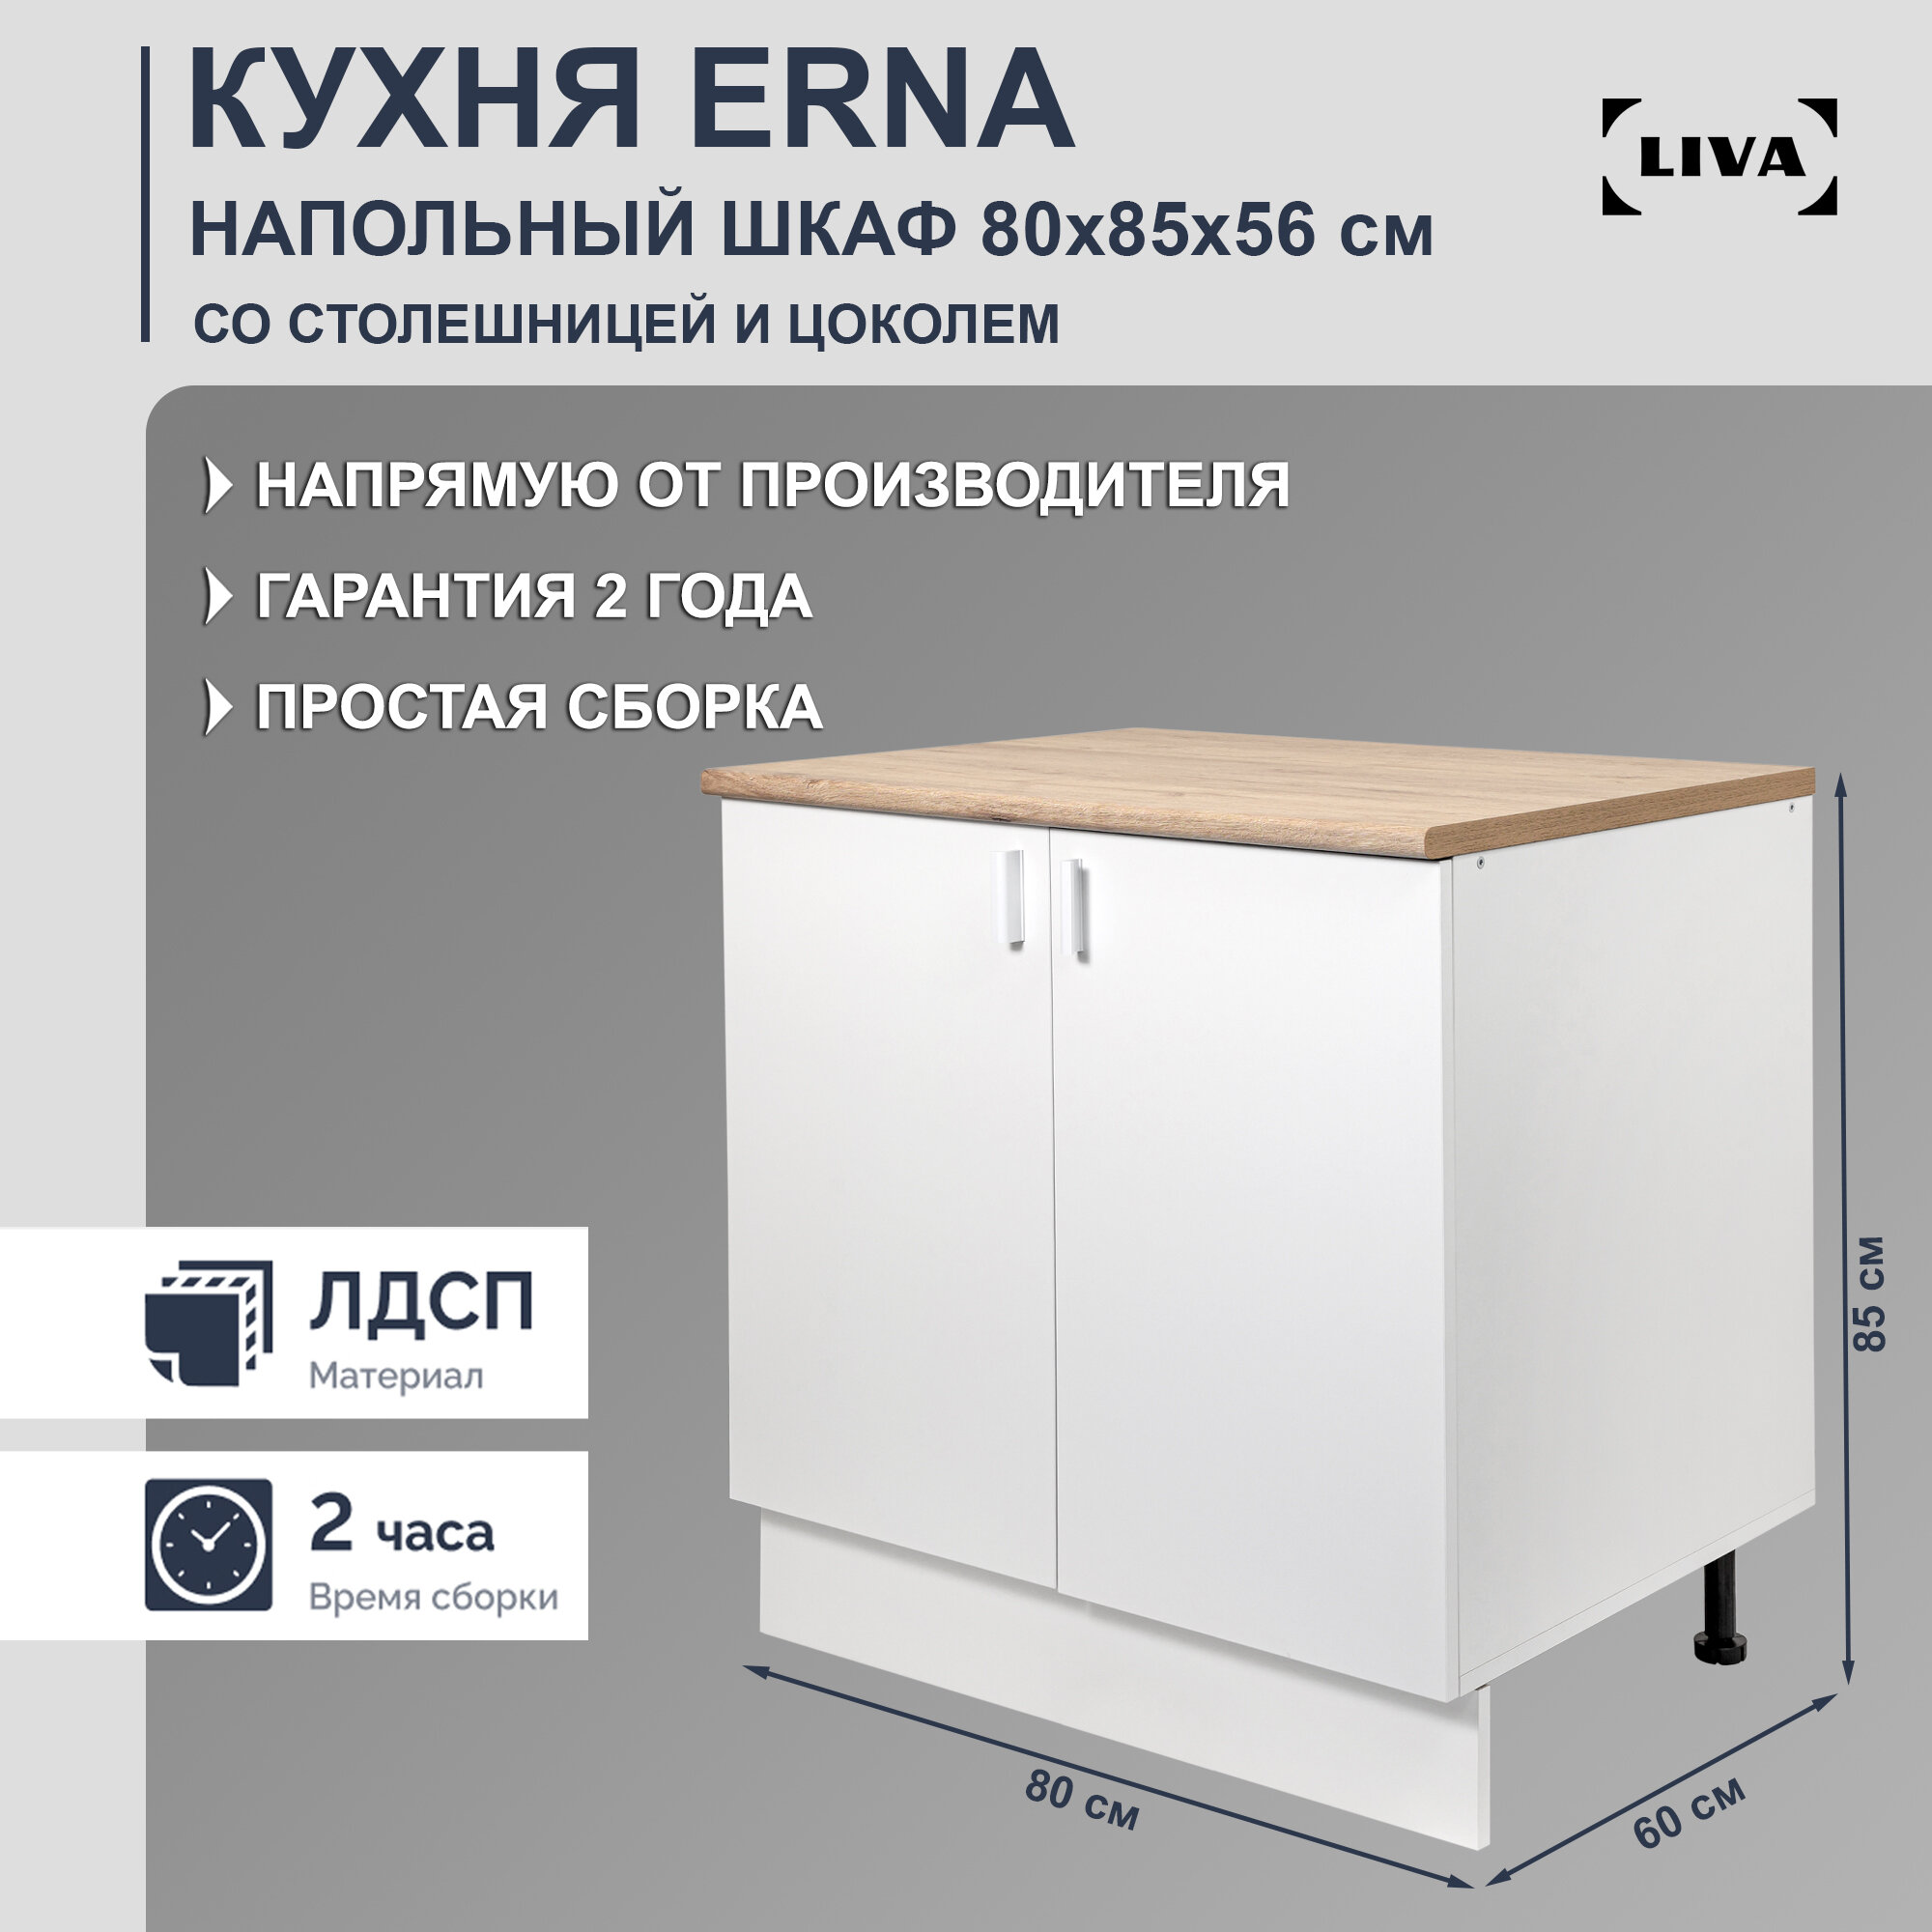 Шкаф кухонный напольный Erna 80х85х56, LIVA